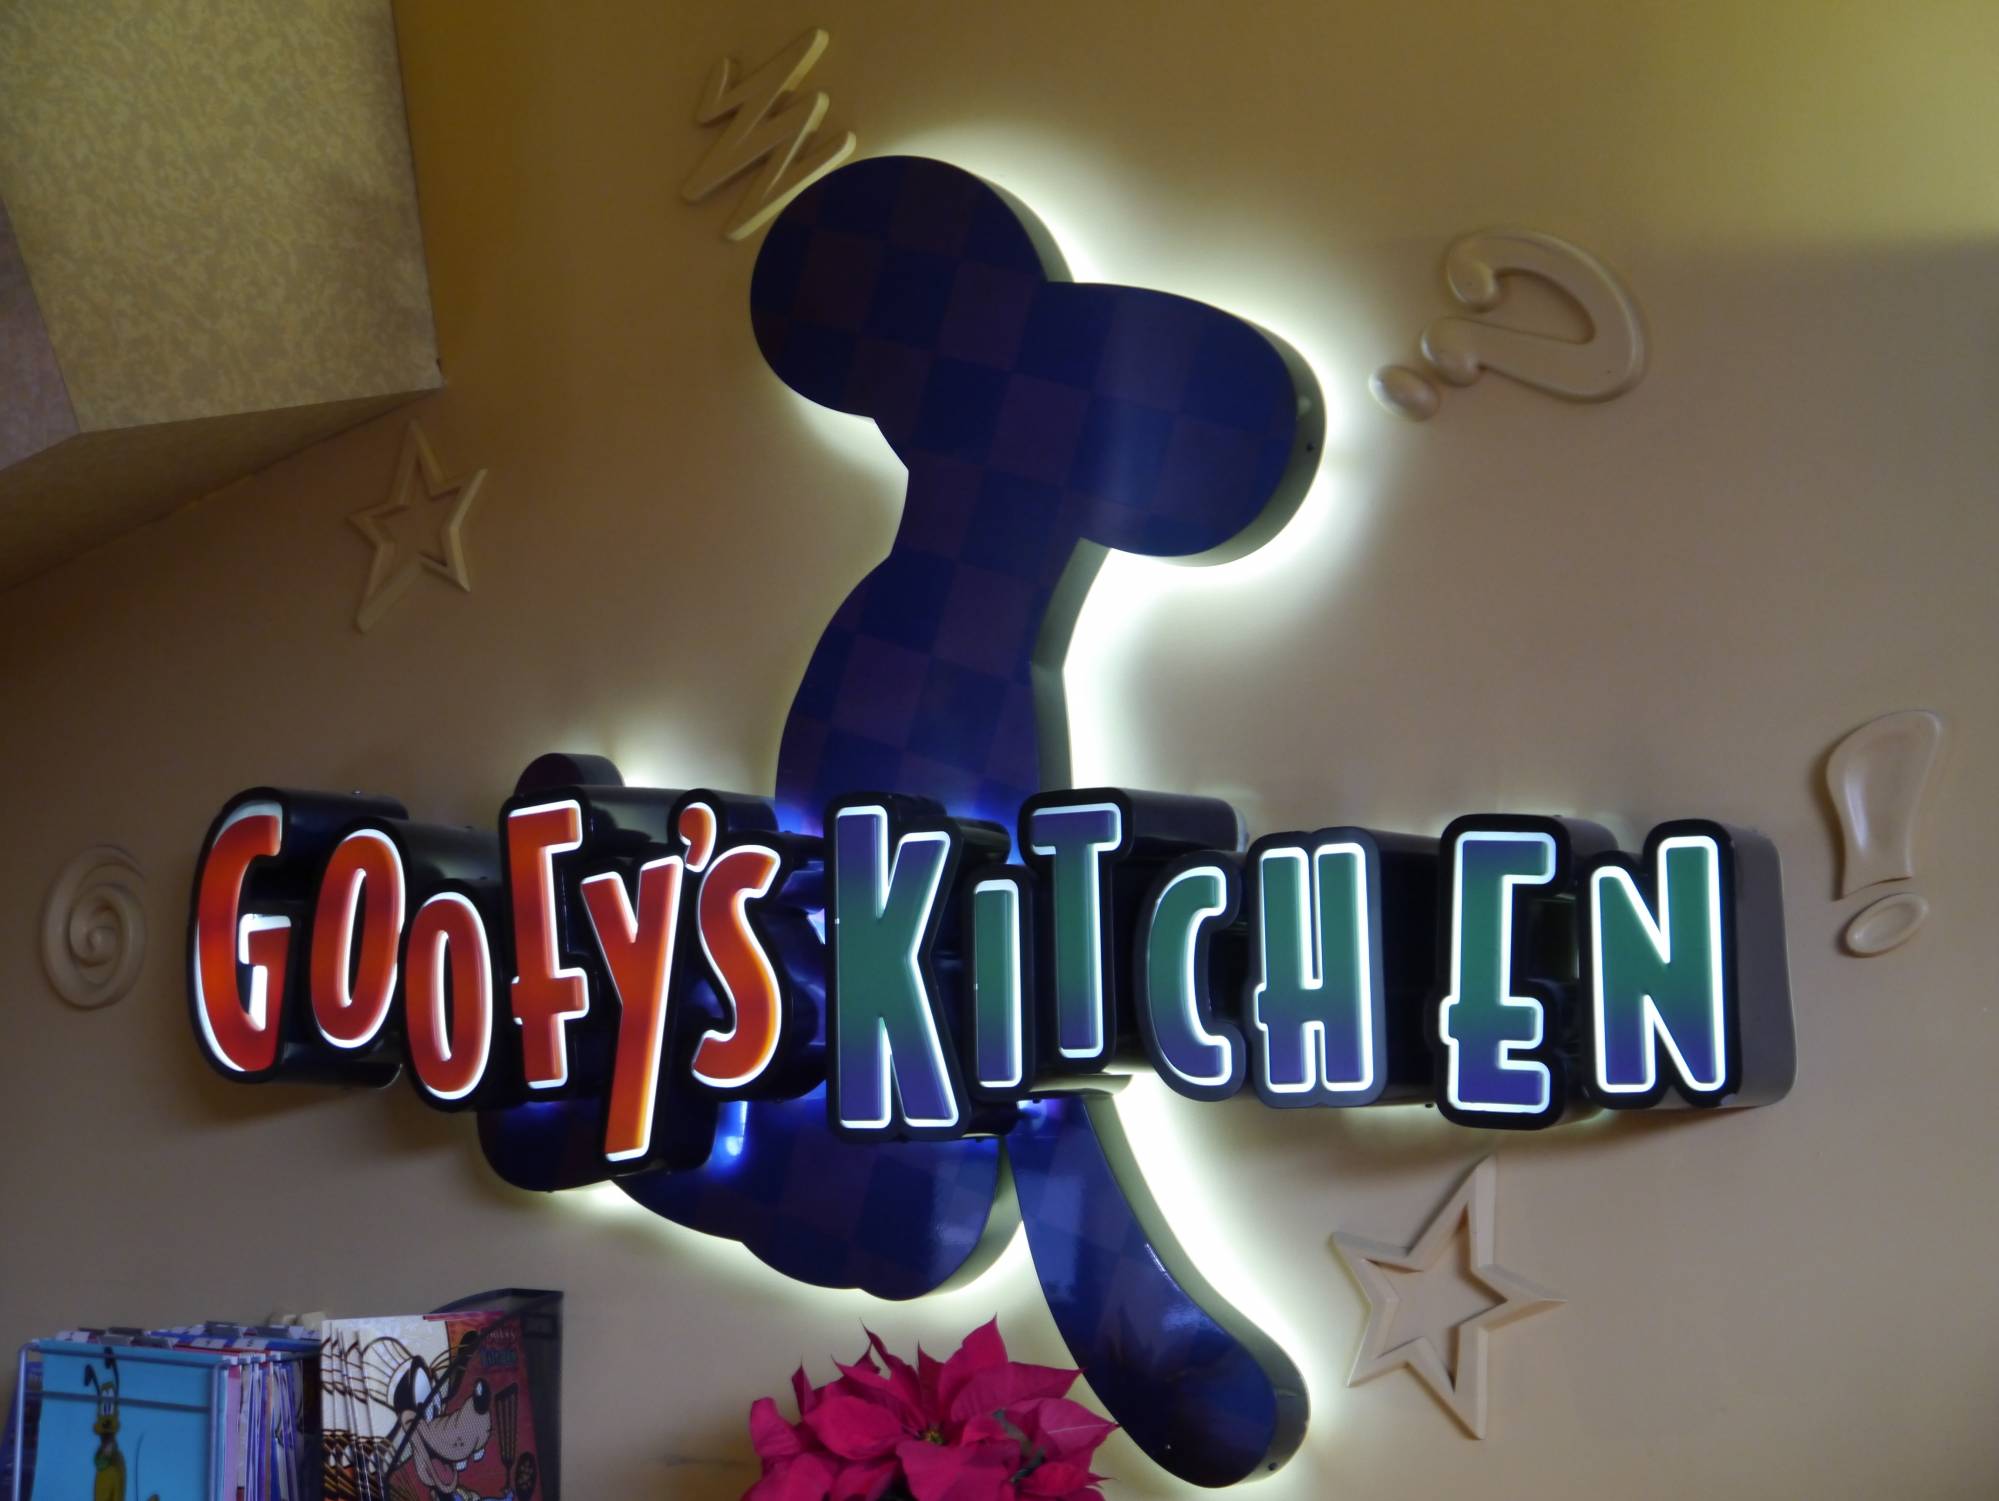 Disneyland Hotel - Goofy's Kitchen